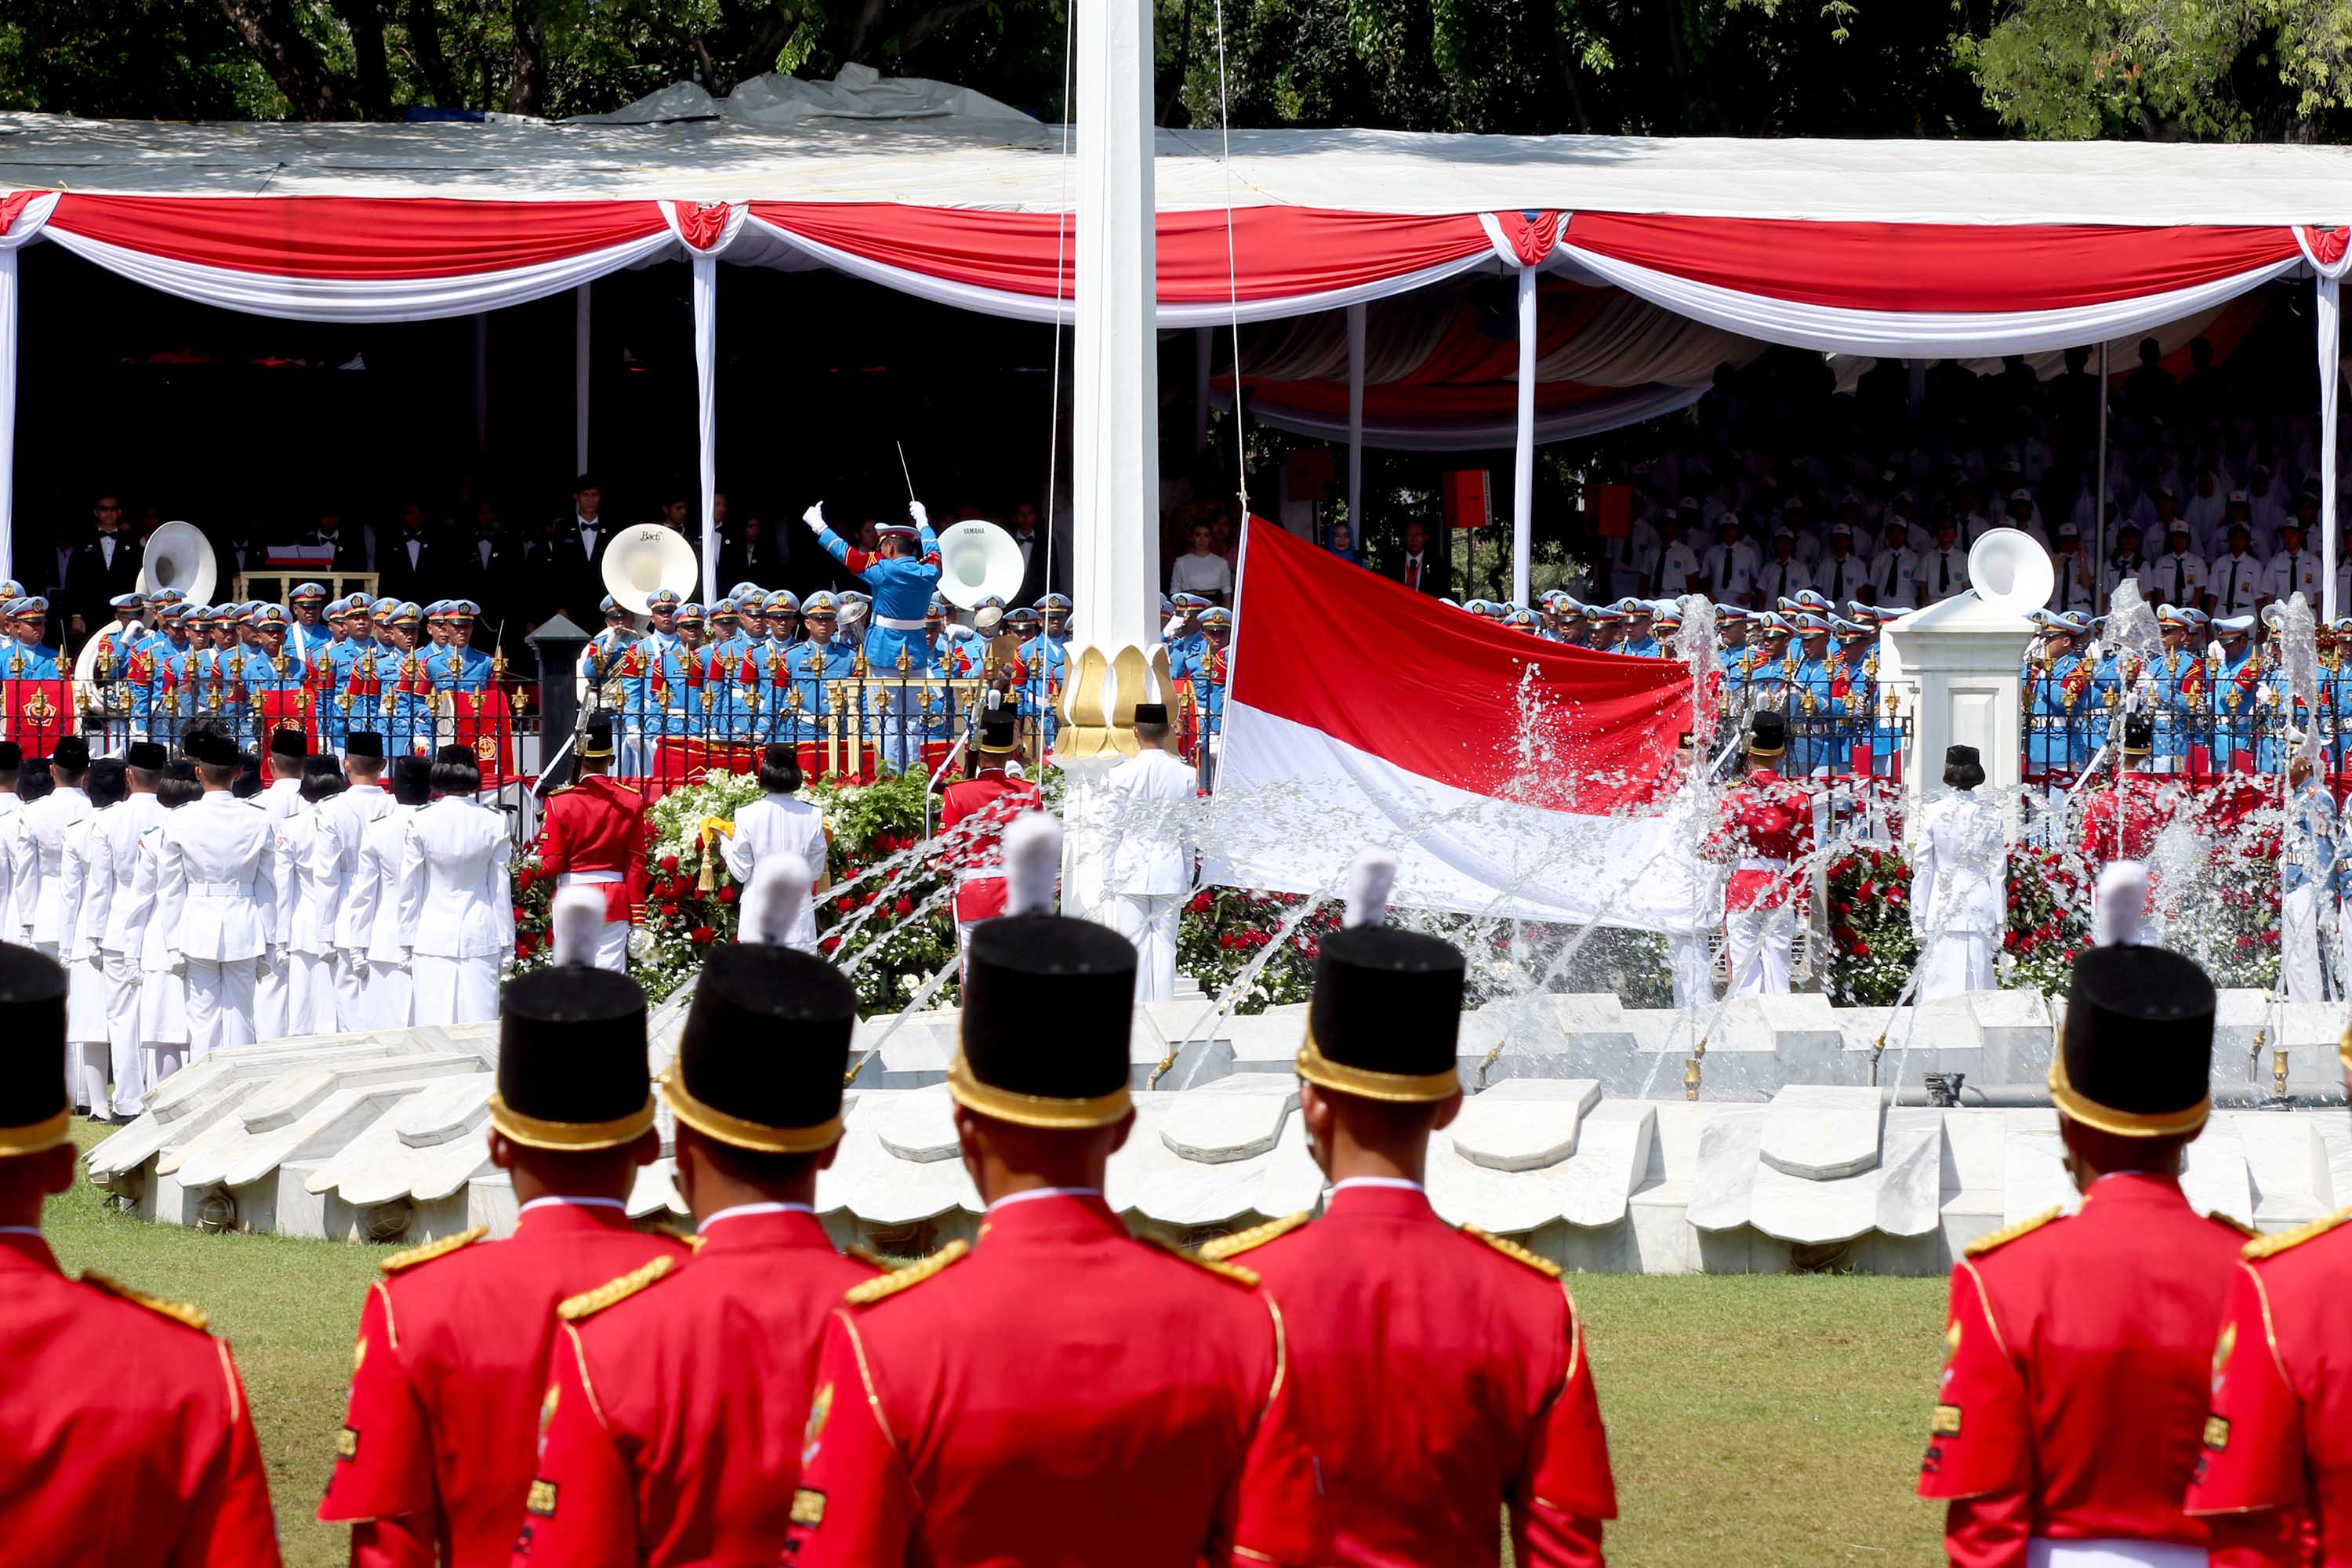 Nggak banyak yang tahu, ini 7 hal baru perayaan HUT ke-71 RI di Istana